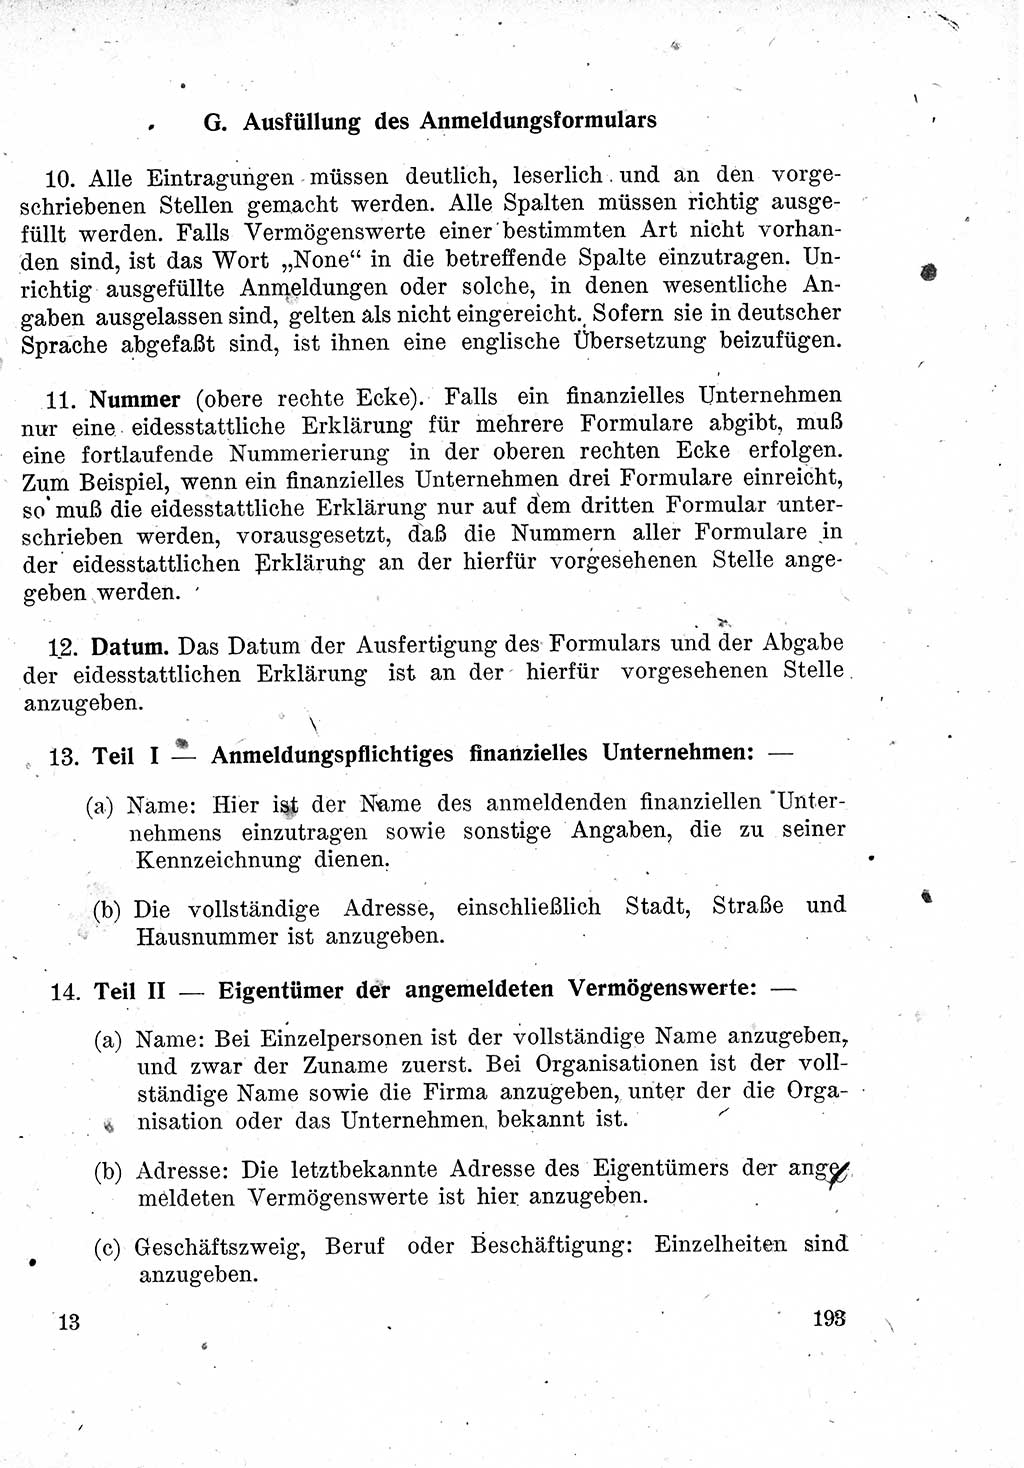 Das Recht der Besatzungsmacht (Deutschland), Proklamationen, Deklerationen, Verordnungen, Gesetze und Bekanntmachungen 1947, Seite 193 (R. Bes. Dtl. 1947, S. 193)